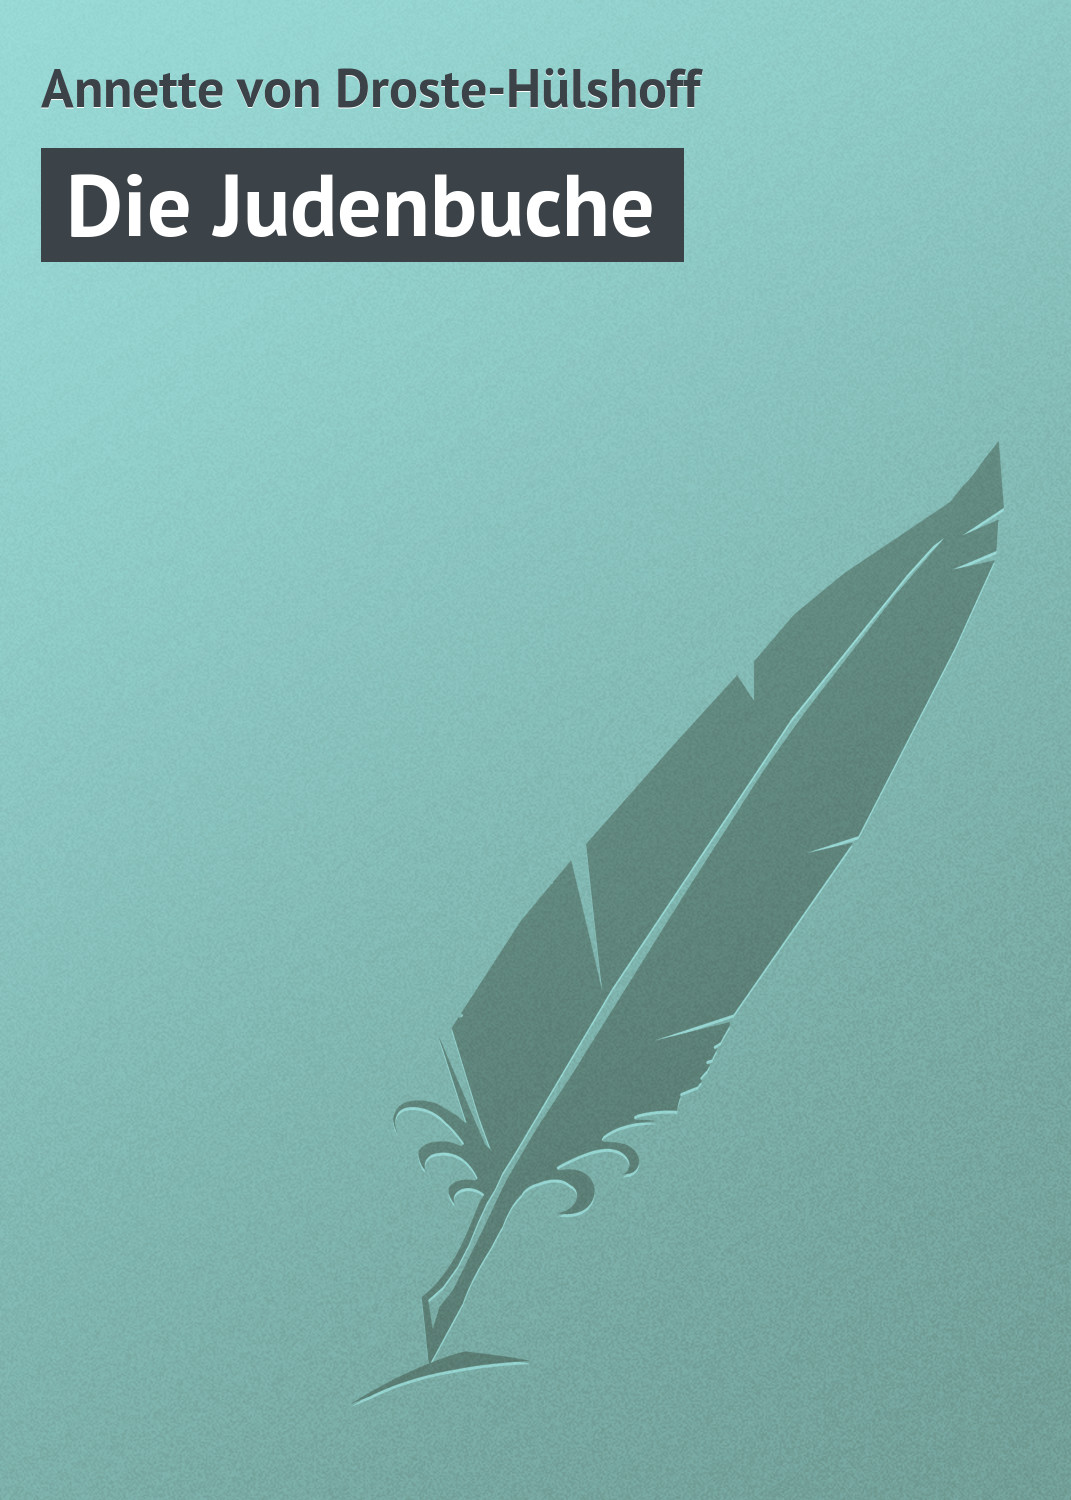 Книга Die Judenbuche из серии , созданная Annette von, может относится к жанру Зарубежная старинная литература, Зарубежная классика. Стоимость электронной книги Die Judenbuche с идентификатором 21105102 составляет 5.99 руб.